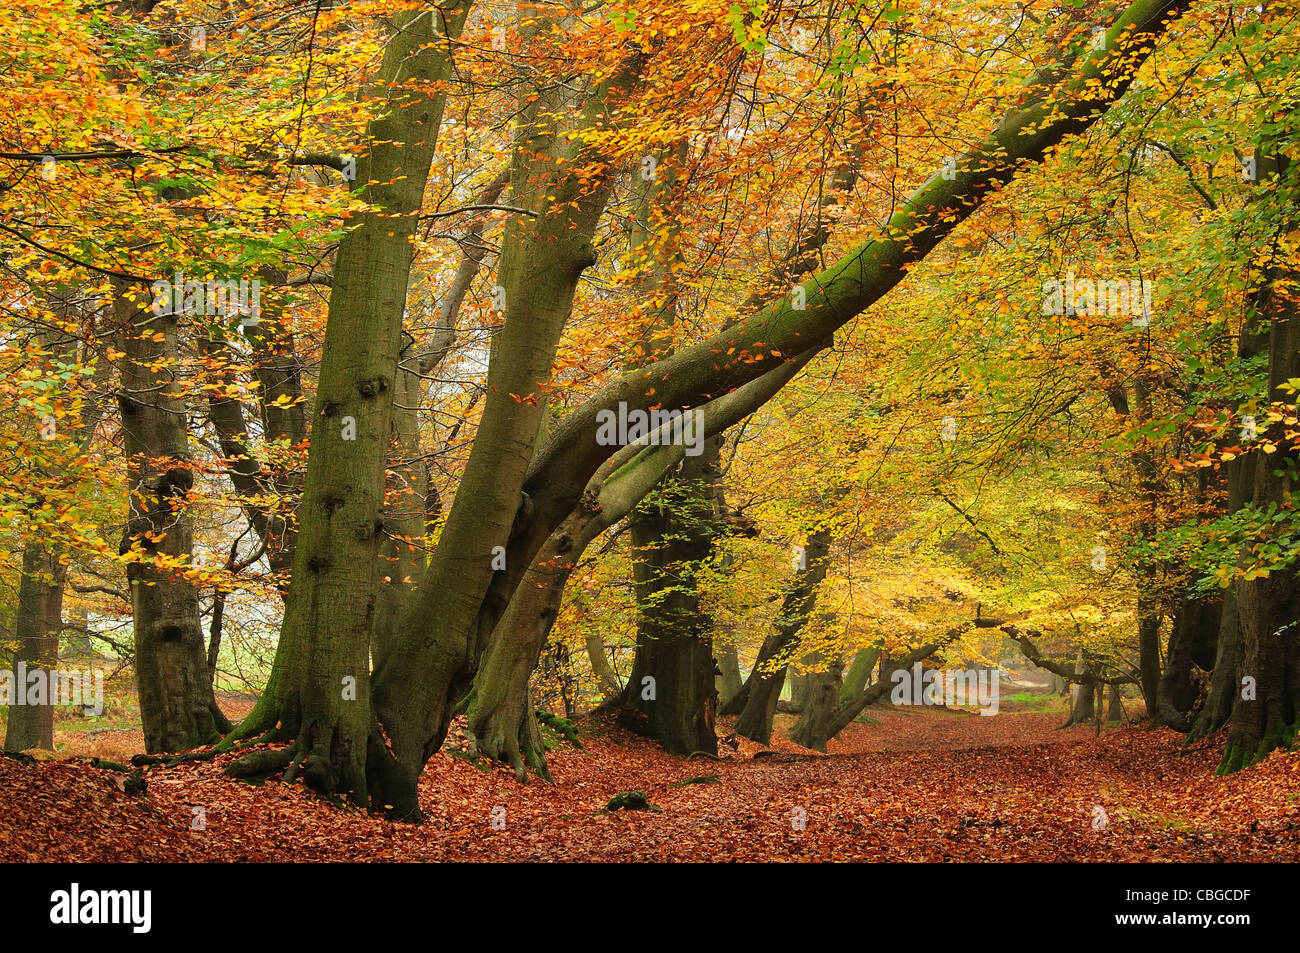 Beech trees in Lady's Walk, Ashridge; Forest, UK Autumn Stock Photo